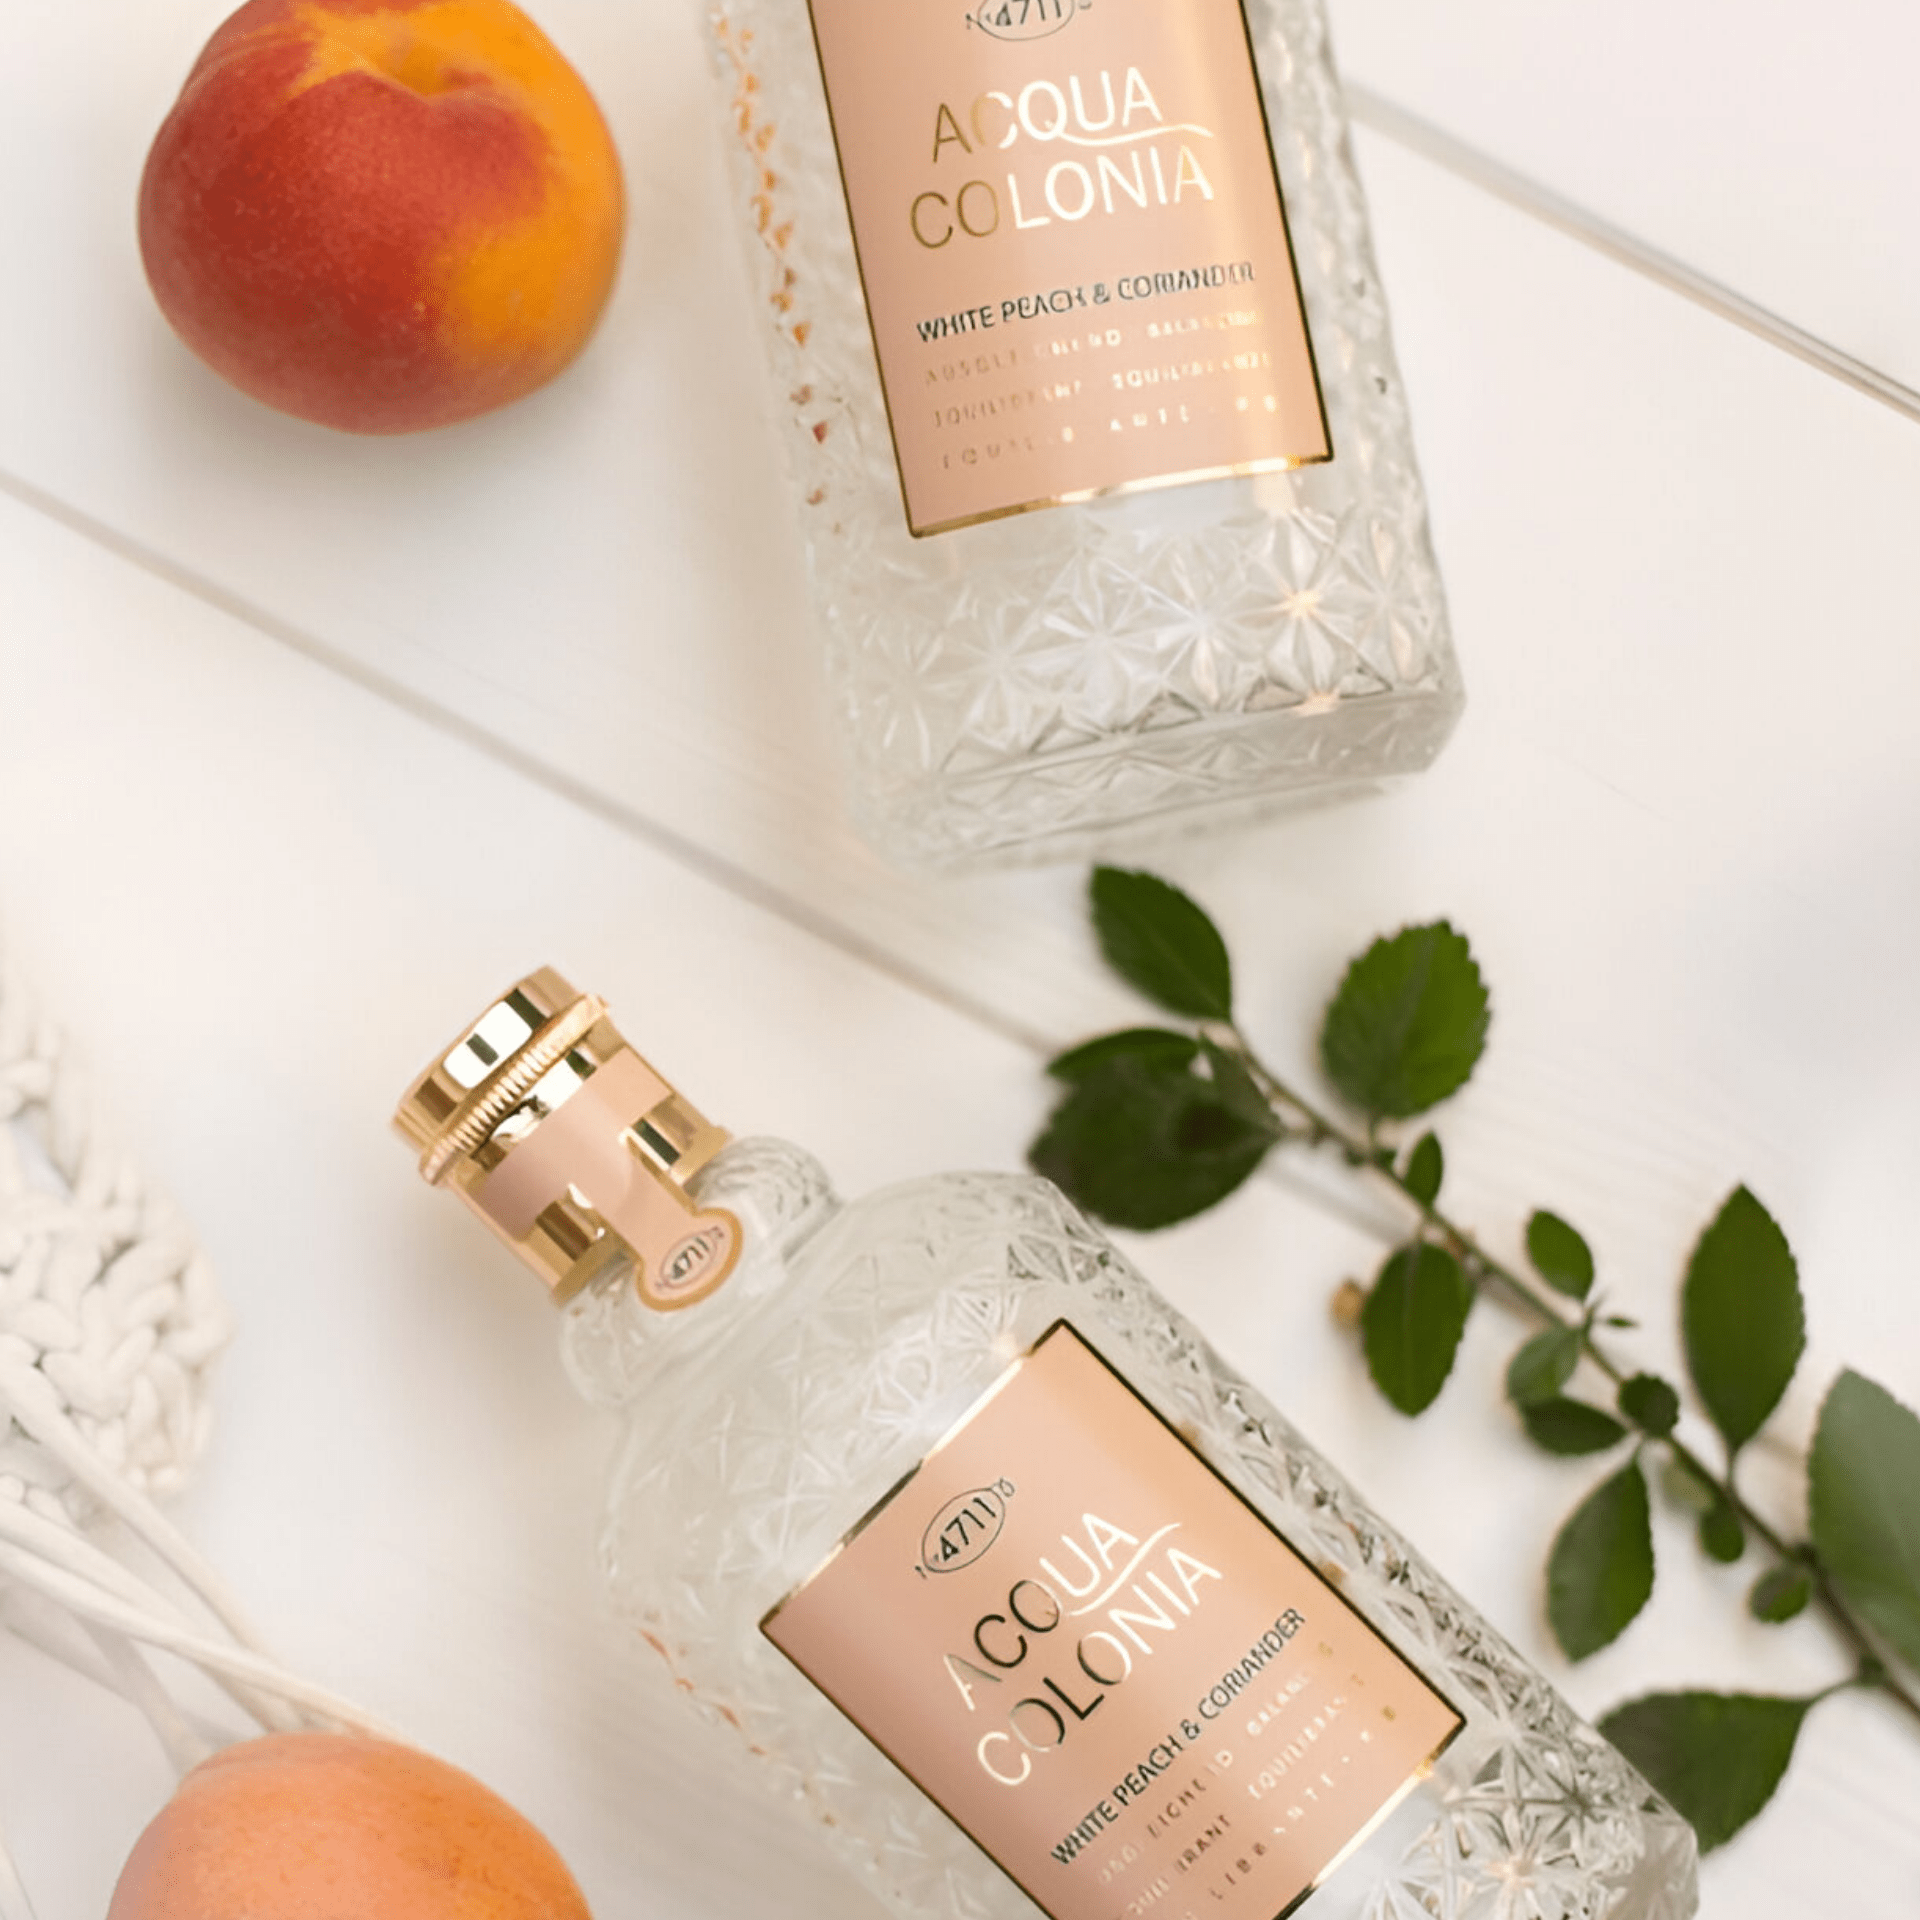 No. 4711 Acqua Colonia White Peach & Coriander Cologne | My Perfume Shop Australia